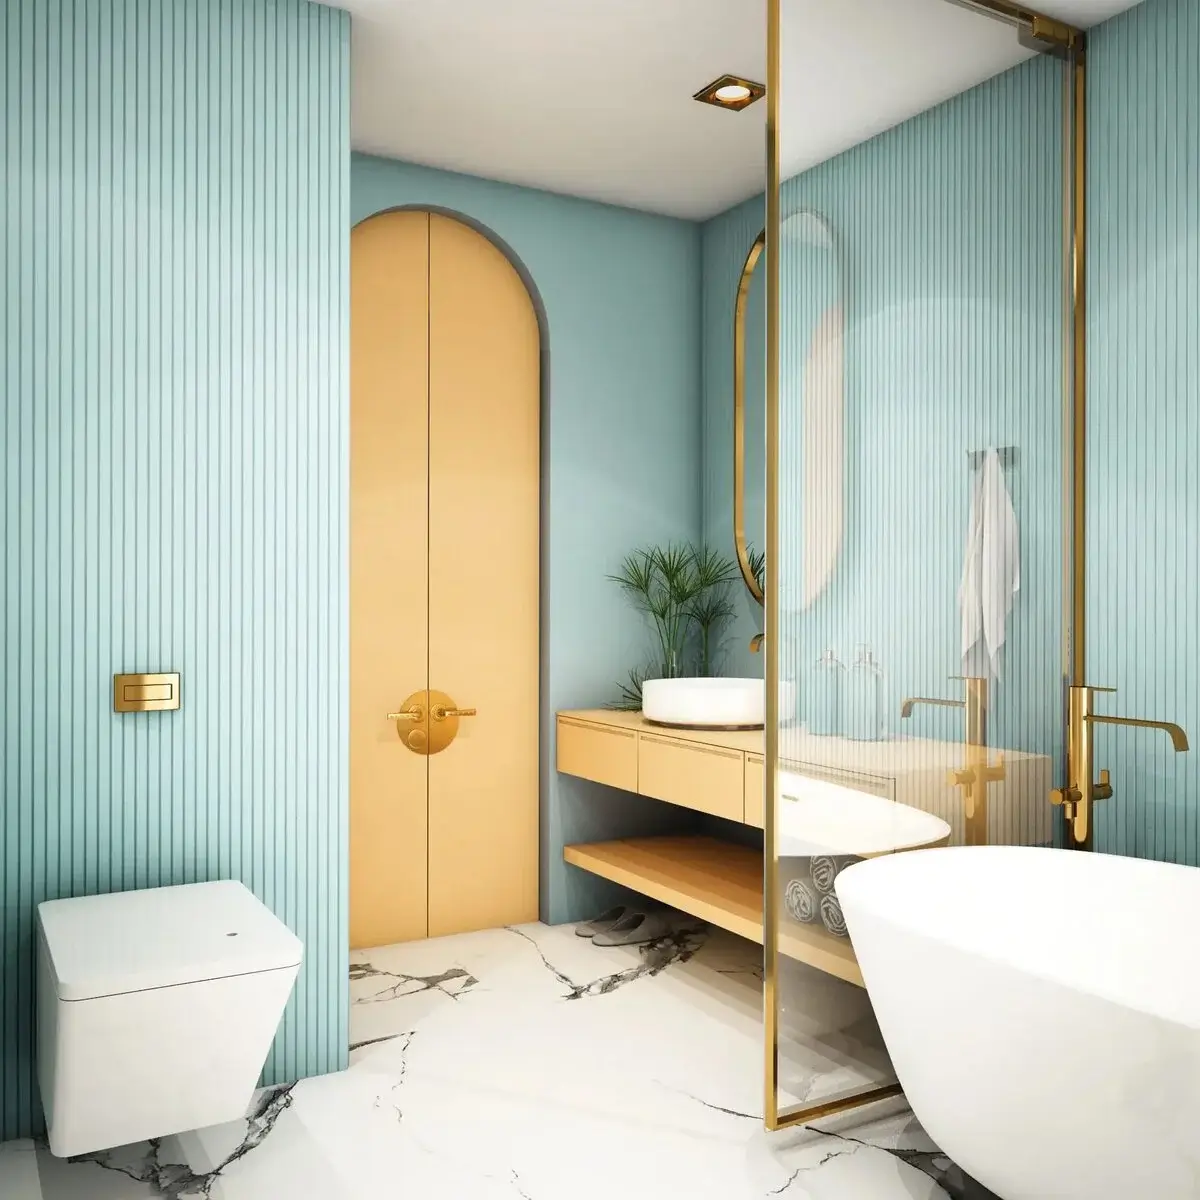 Accesorios baño dorados: exclusividad para el cuarto de baño